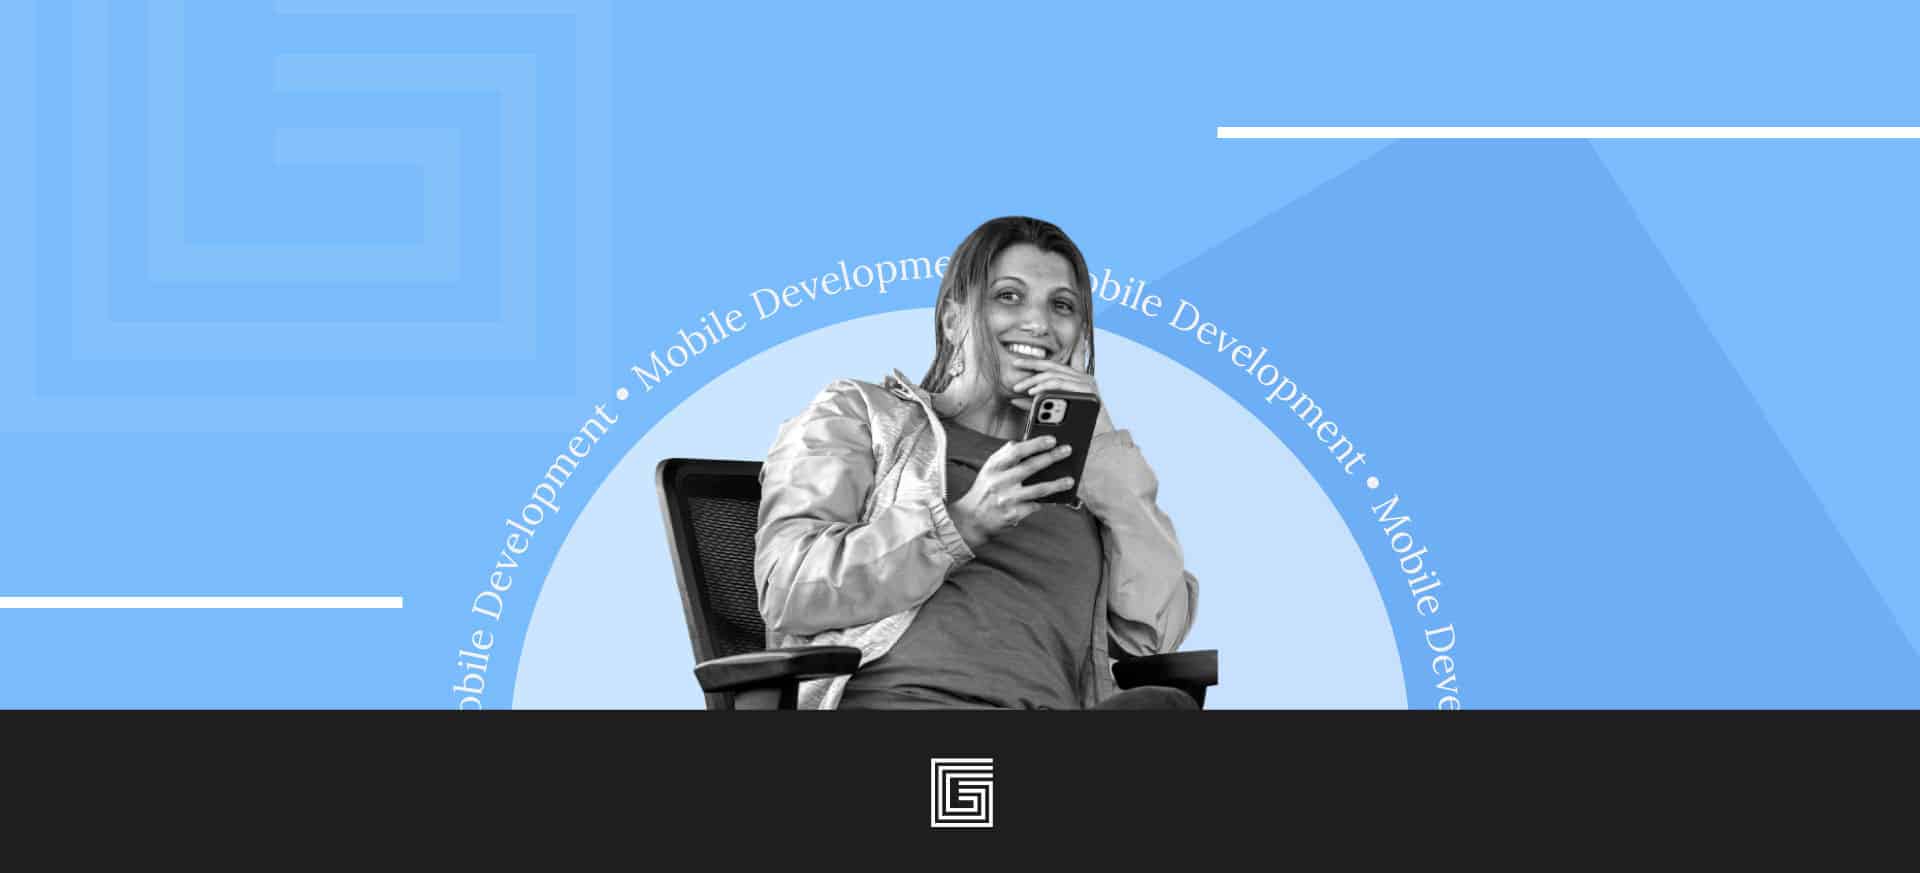 Gorilla Logic Mobile App Development Partner